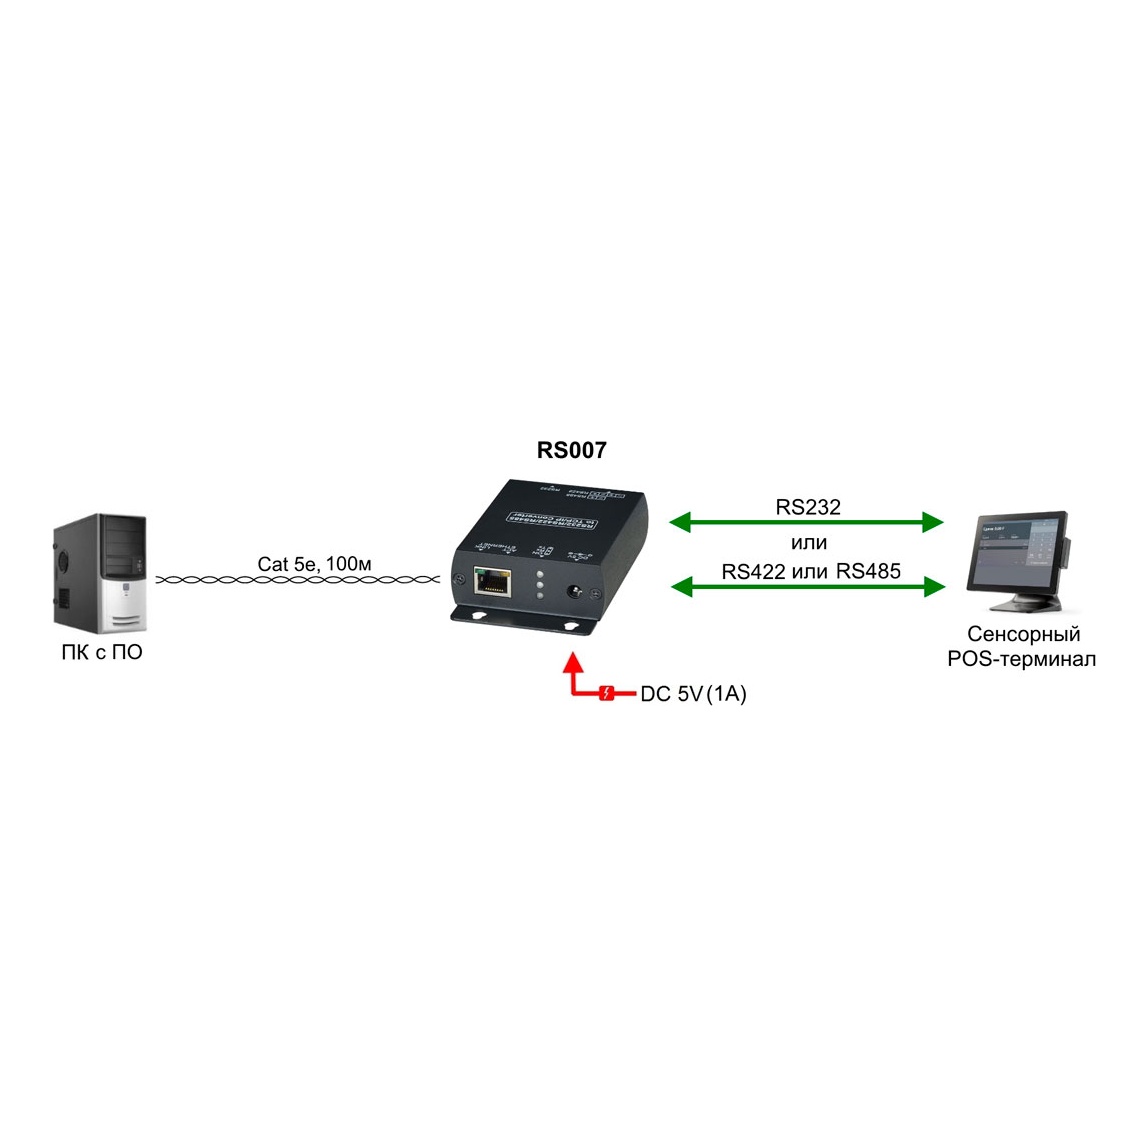 SC&T RS007 Преобразователь интерфейса RS485/RS422/RS232 в Ethernet (cервер последовательного интерфейса) обеспечивает подключение к сети устройств с указанными интерфейсами и передачу по Ethernet сигналов управления